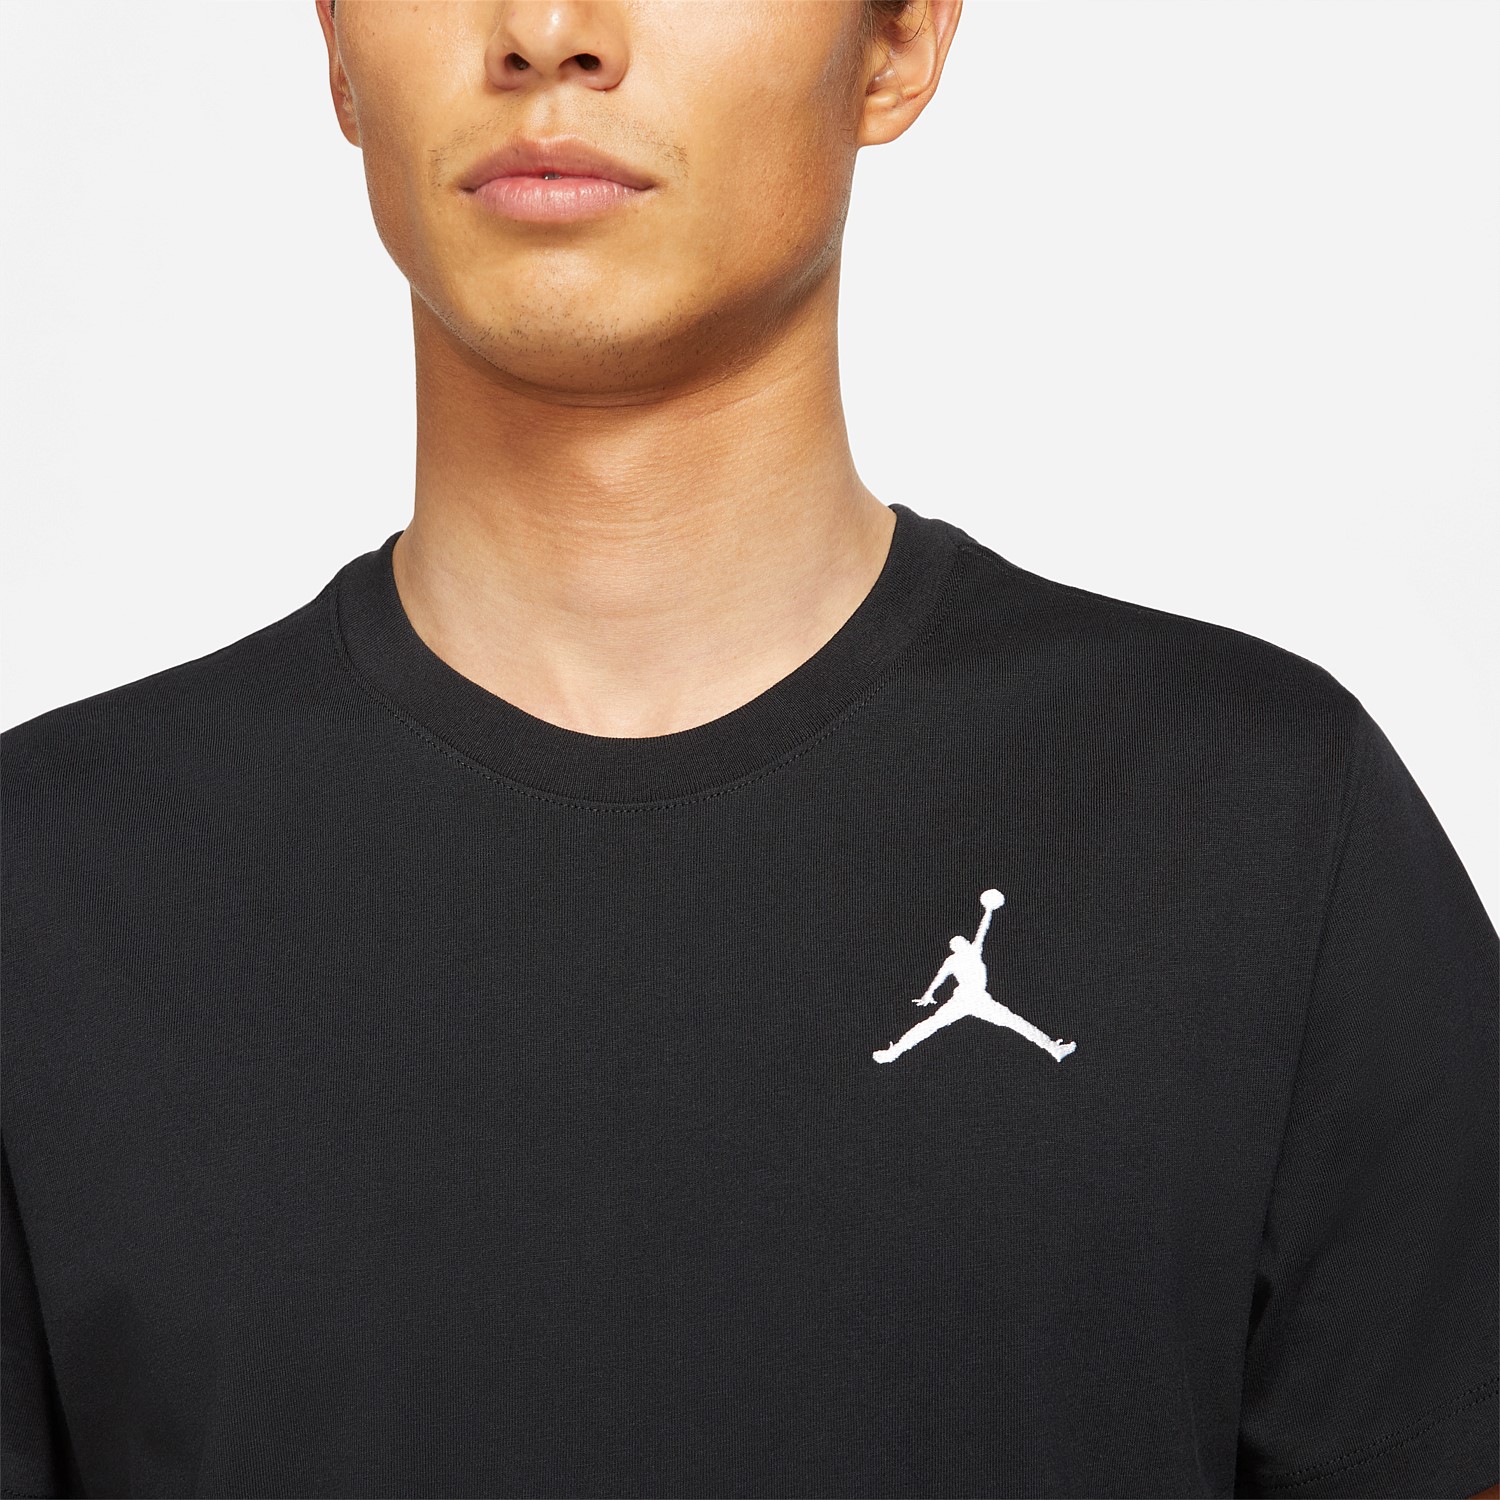 Jordan Jumpman Short Sleeve T-Shirt